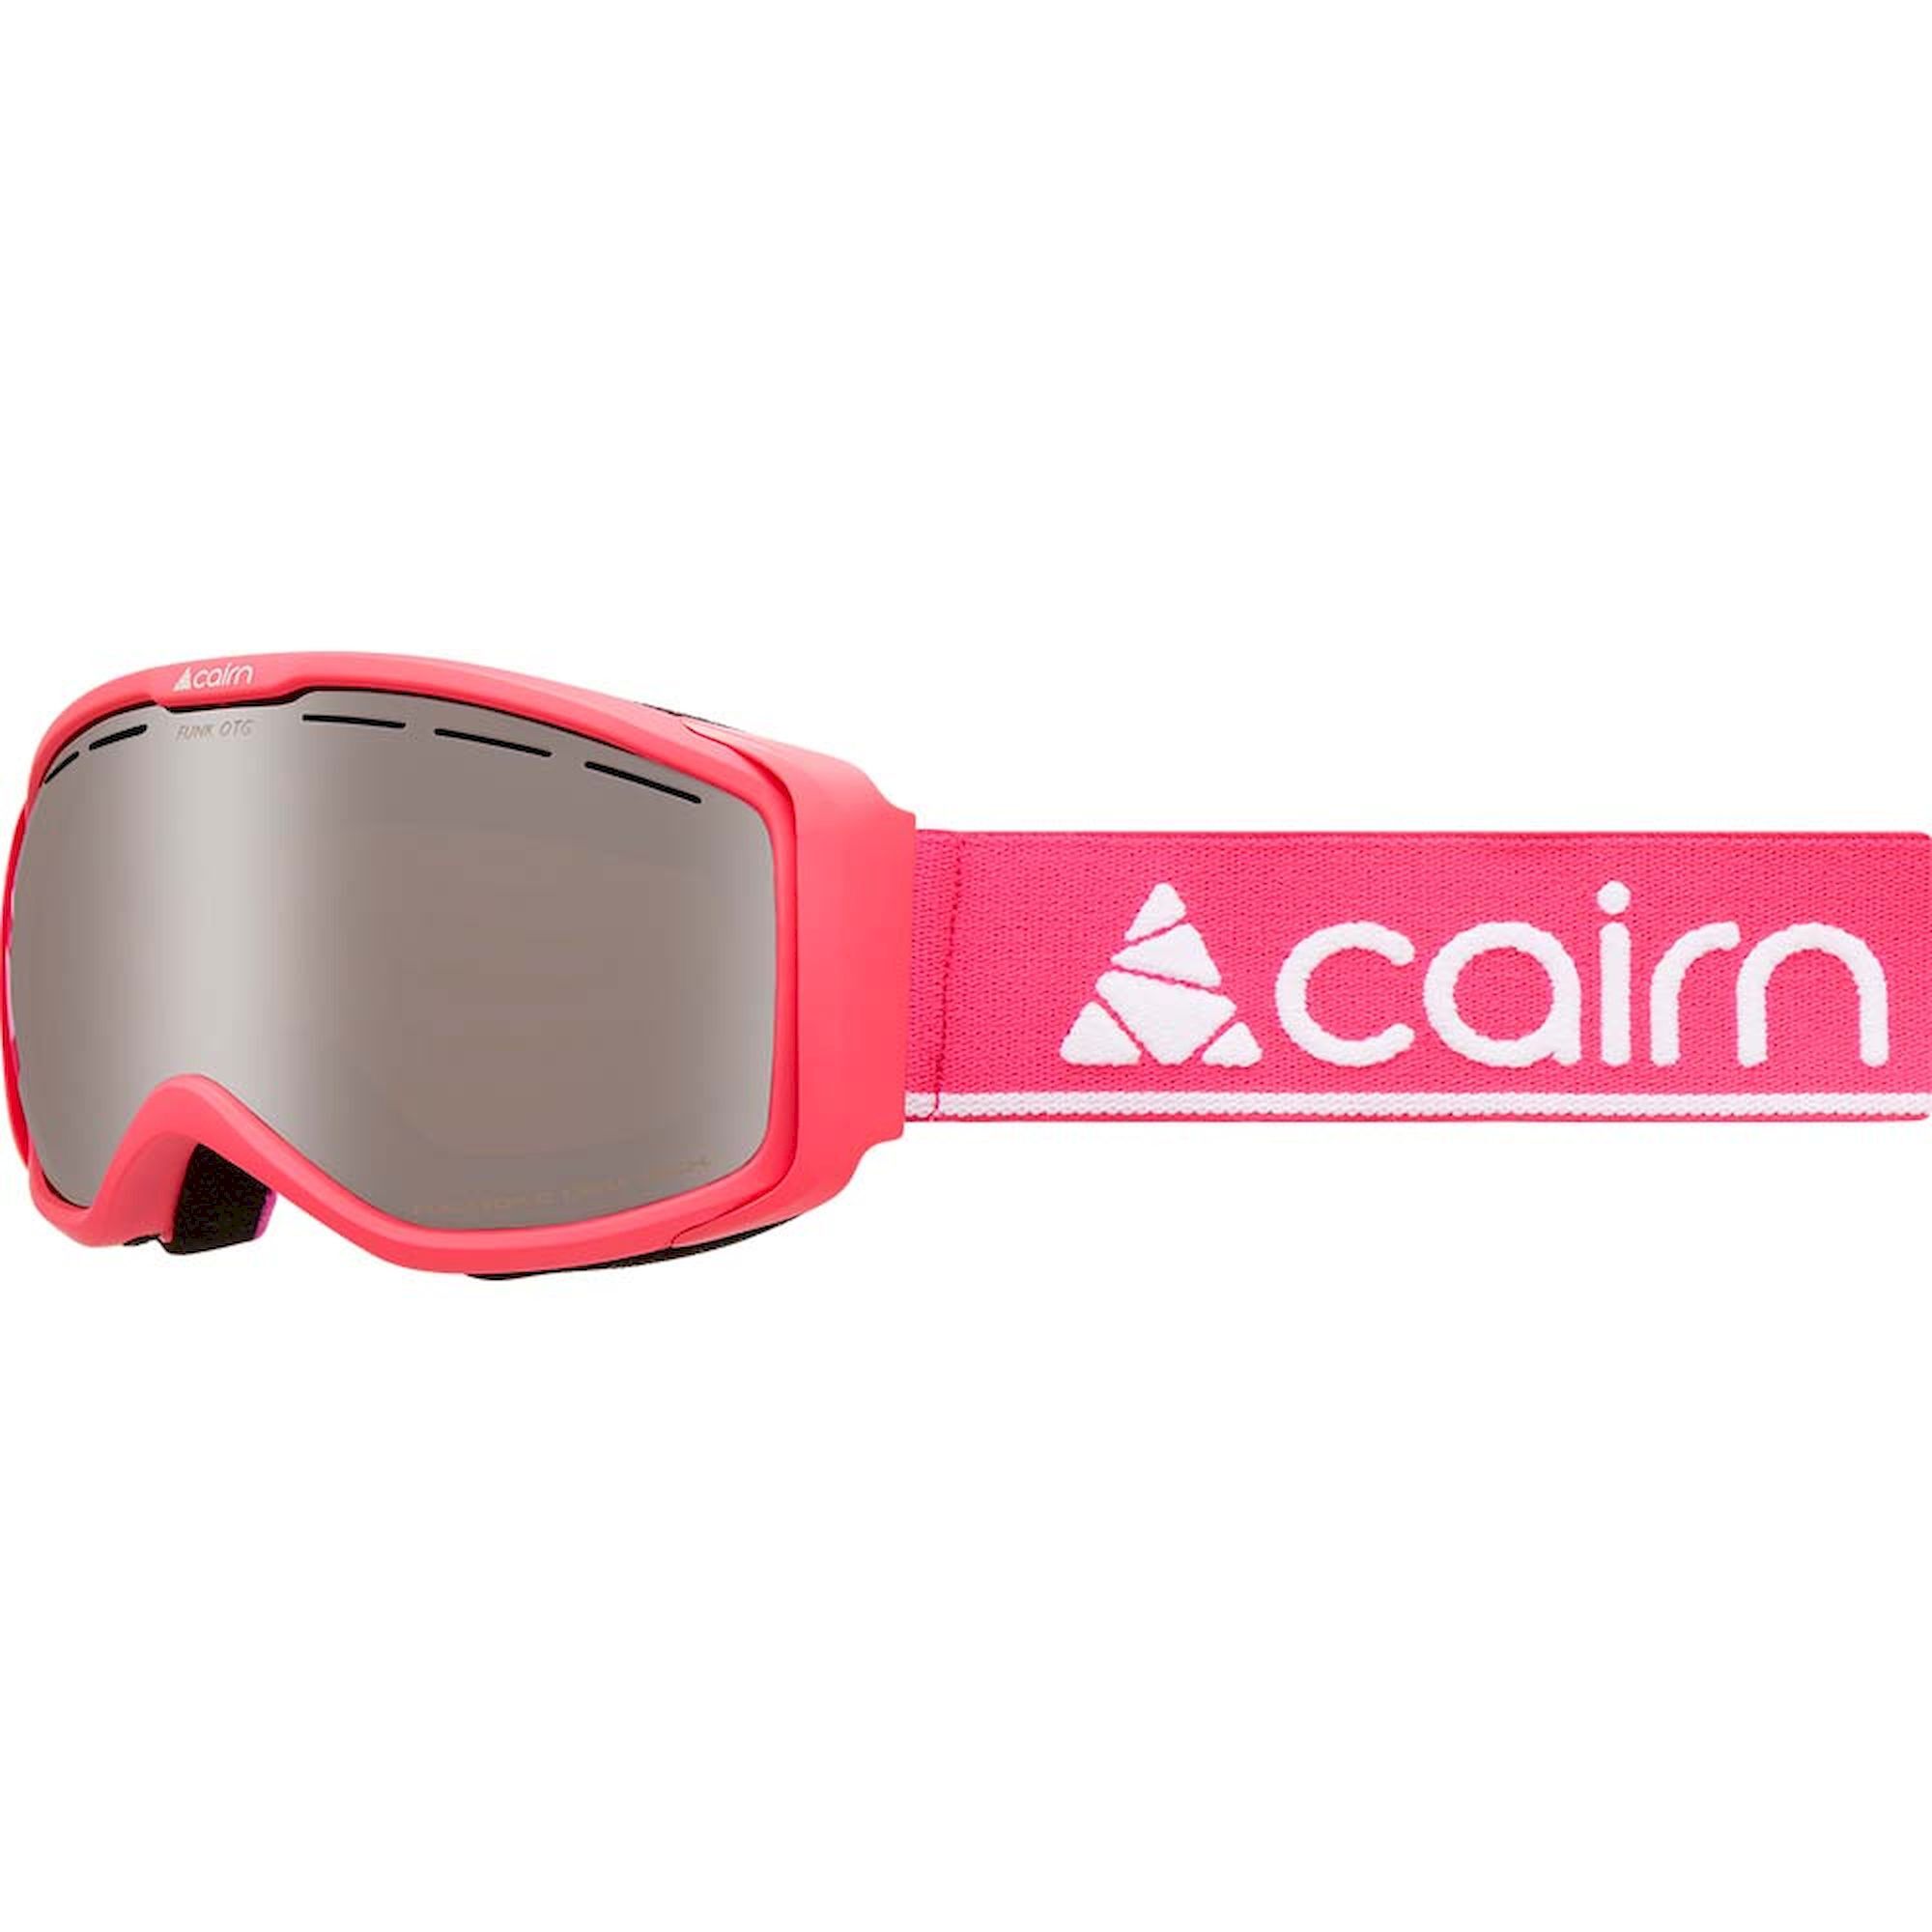 Cairn Funk OTG - Ski goggles - Kids